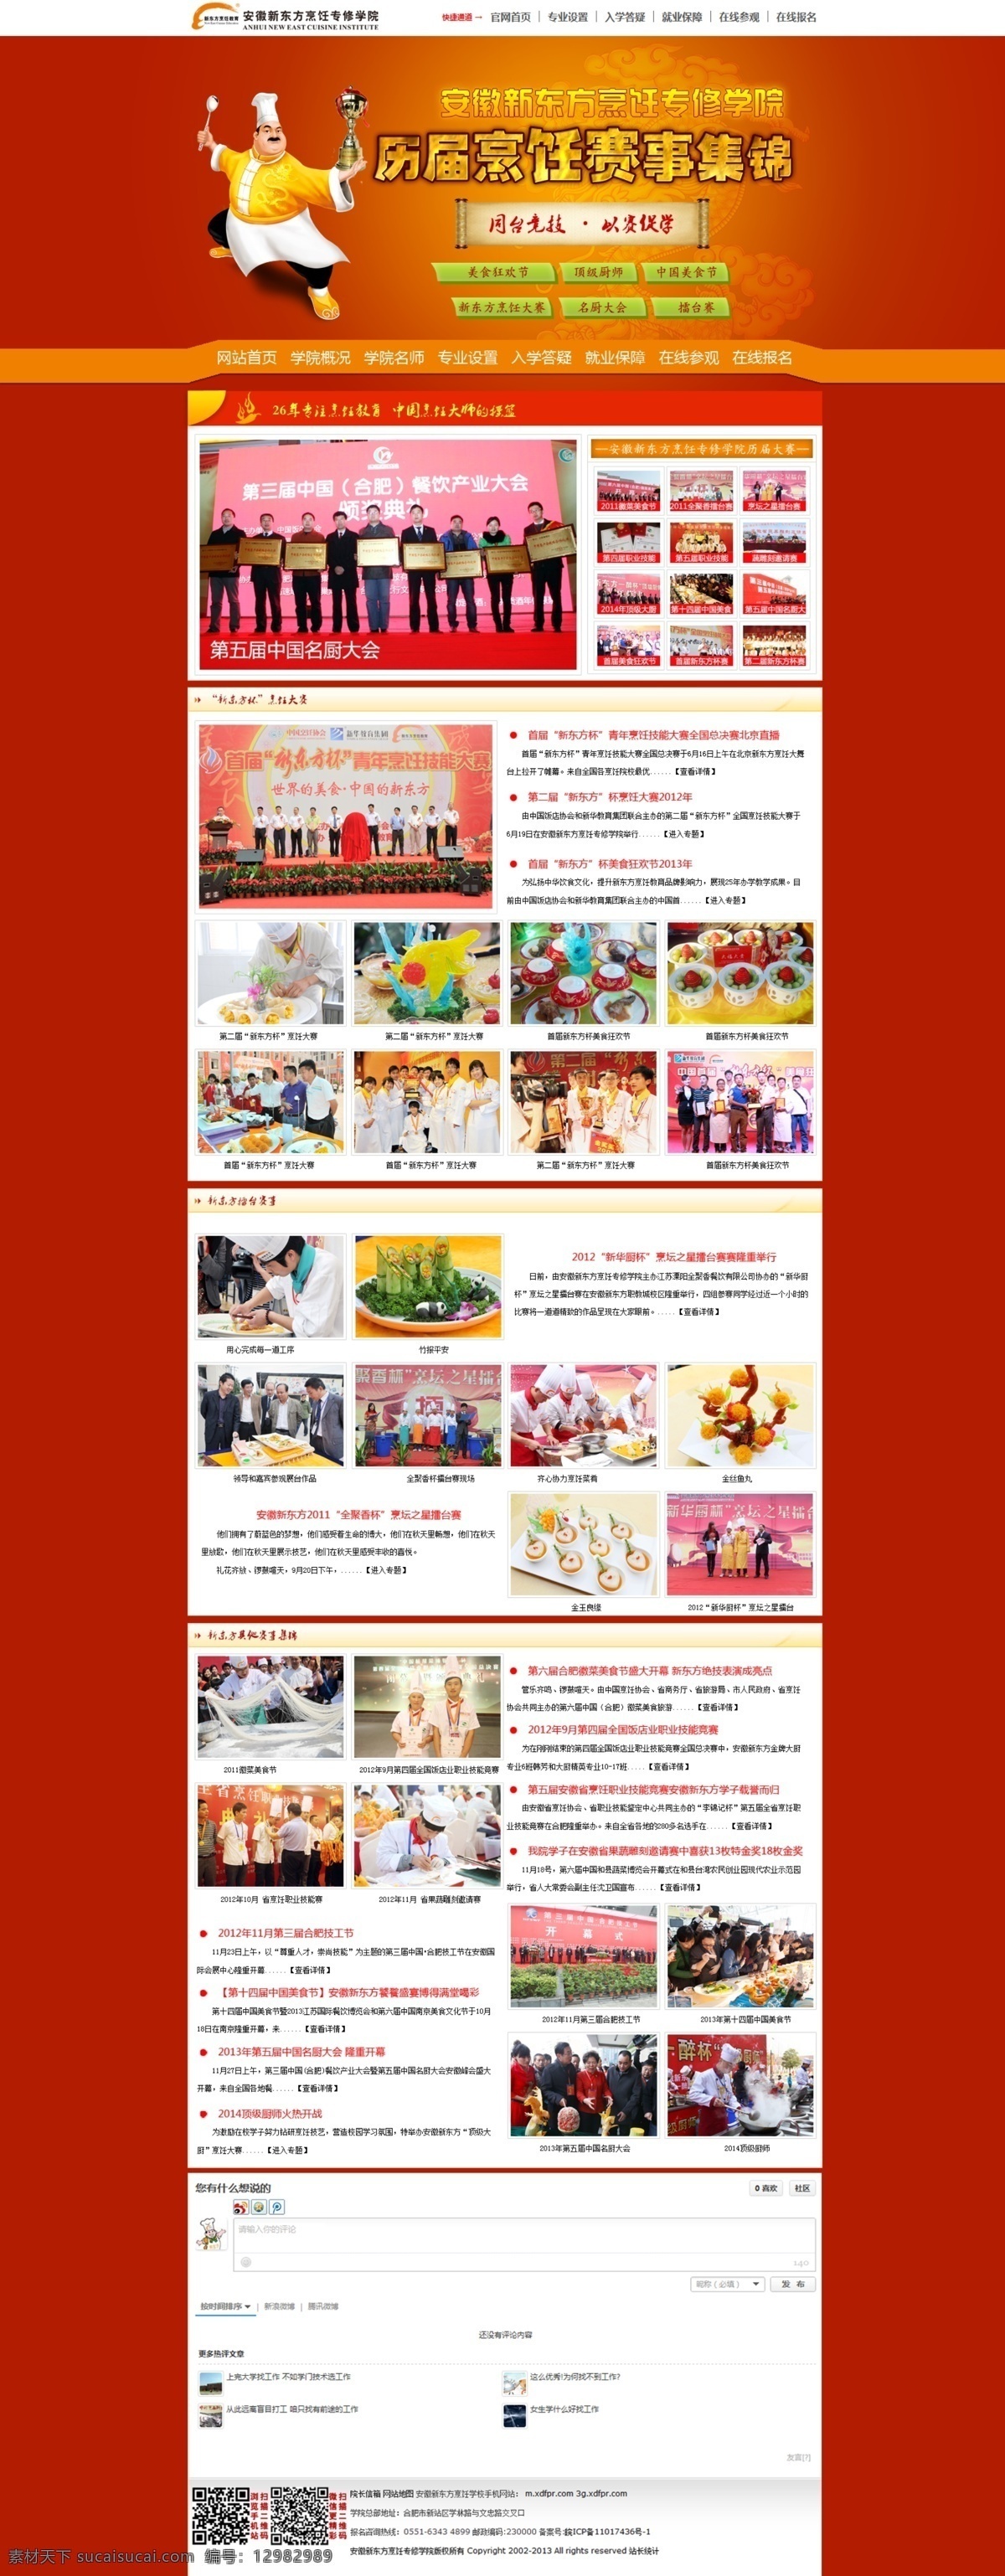 烹饪 赛事 整合 专题 其他模板 网页模板 源文件 中文模板 专题模板 卡通大厨 150pdi 原创设计 原创网页设计